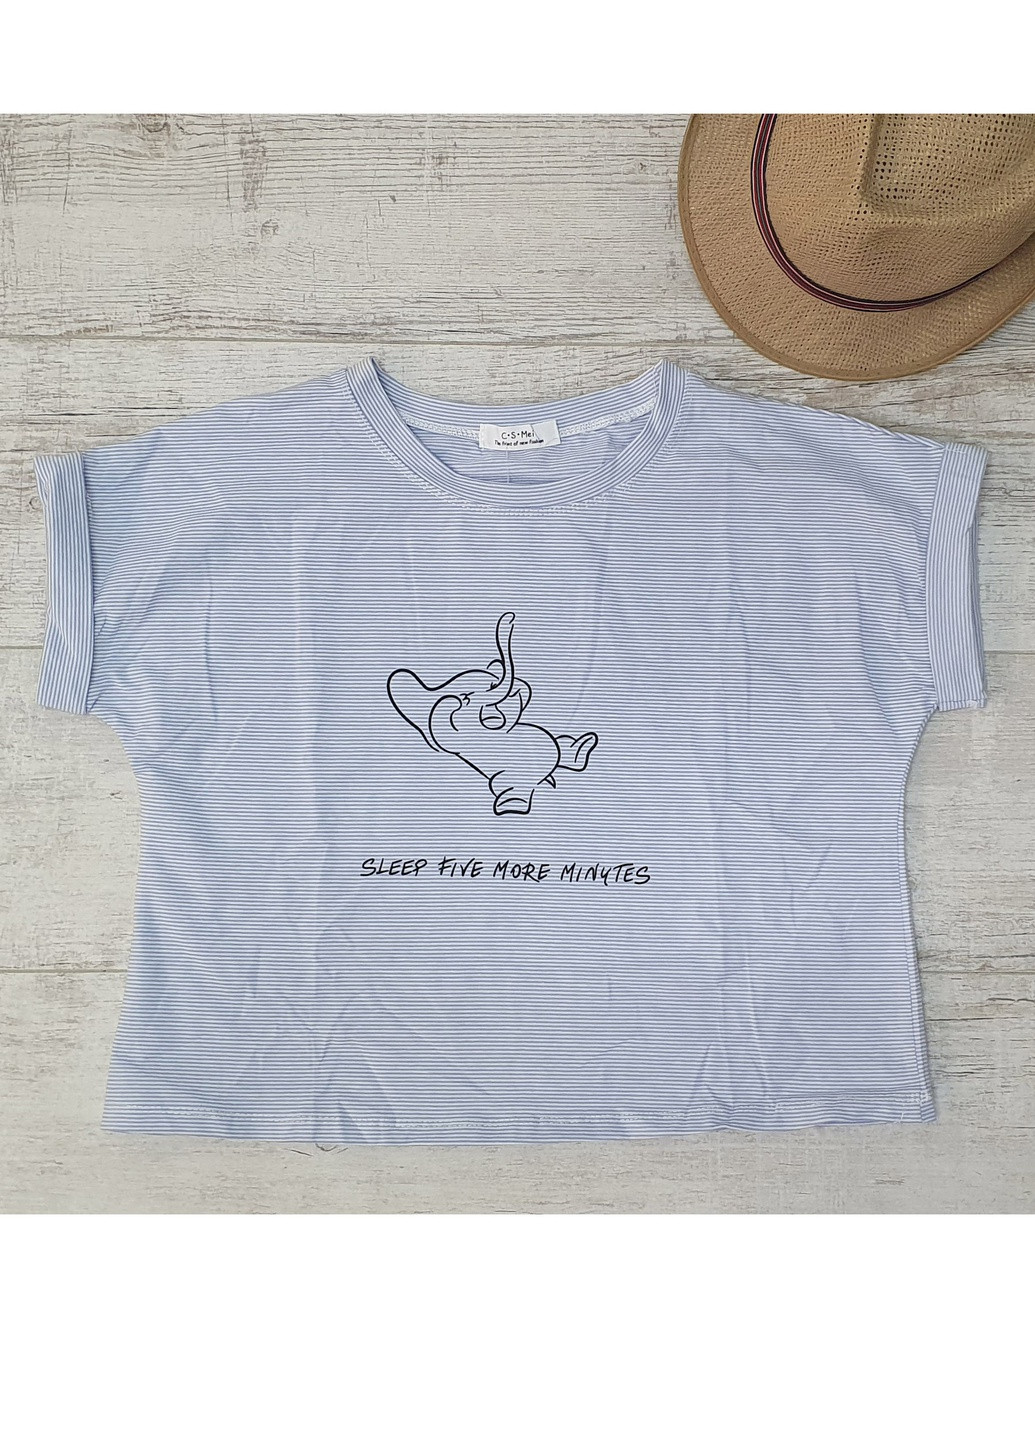 Голубая летняя футболка женская слон голубая р s-m Let's Shop